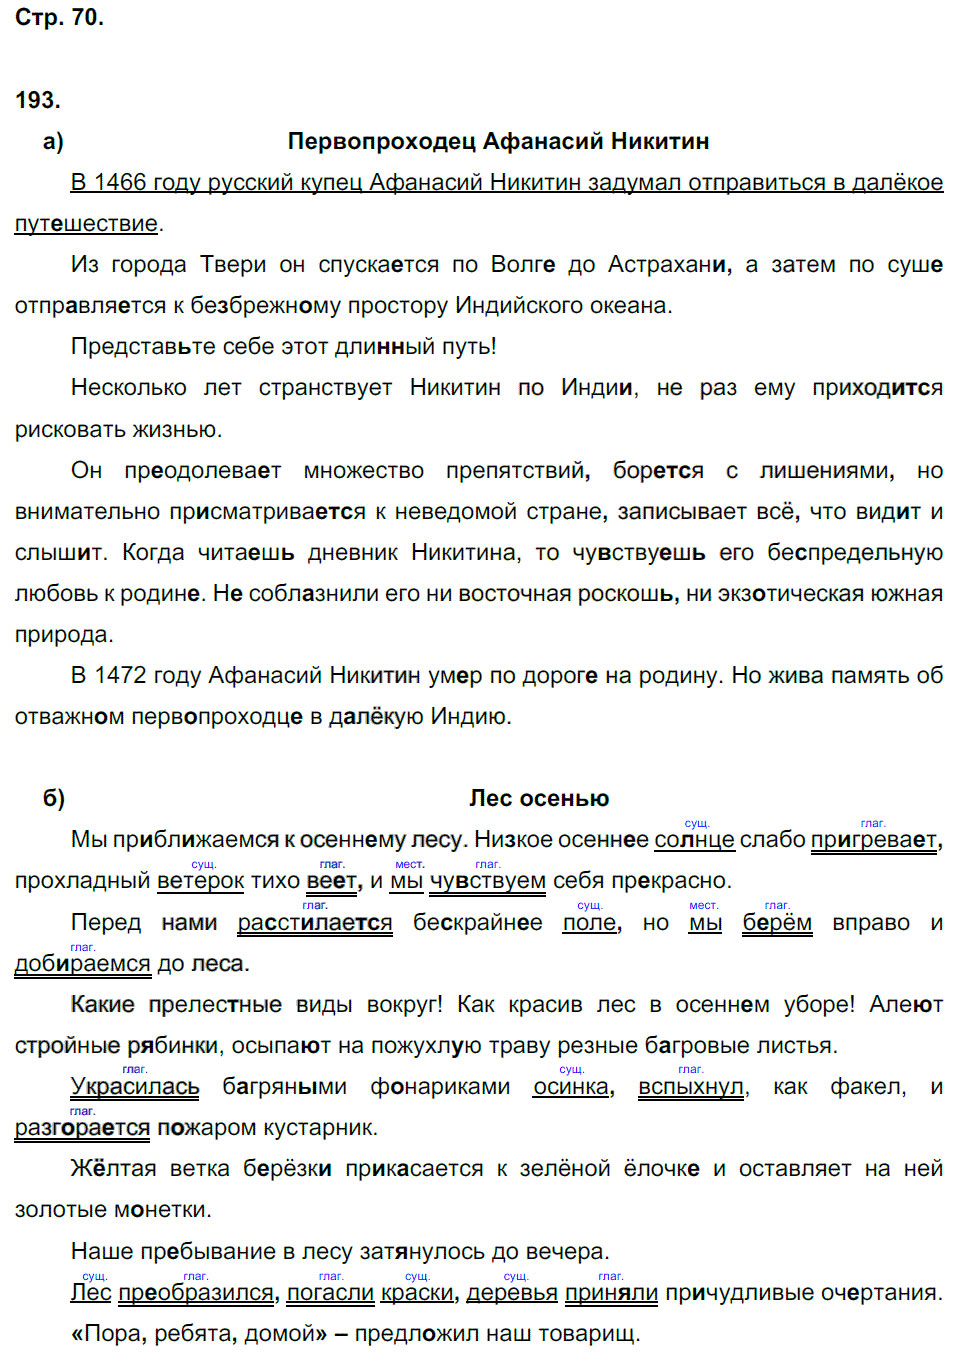 гдз 6 класс рабочая тетрадь часть 2 страница 70 русский язык Тростенцова, Дейкина